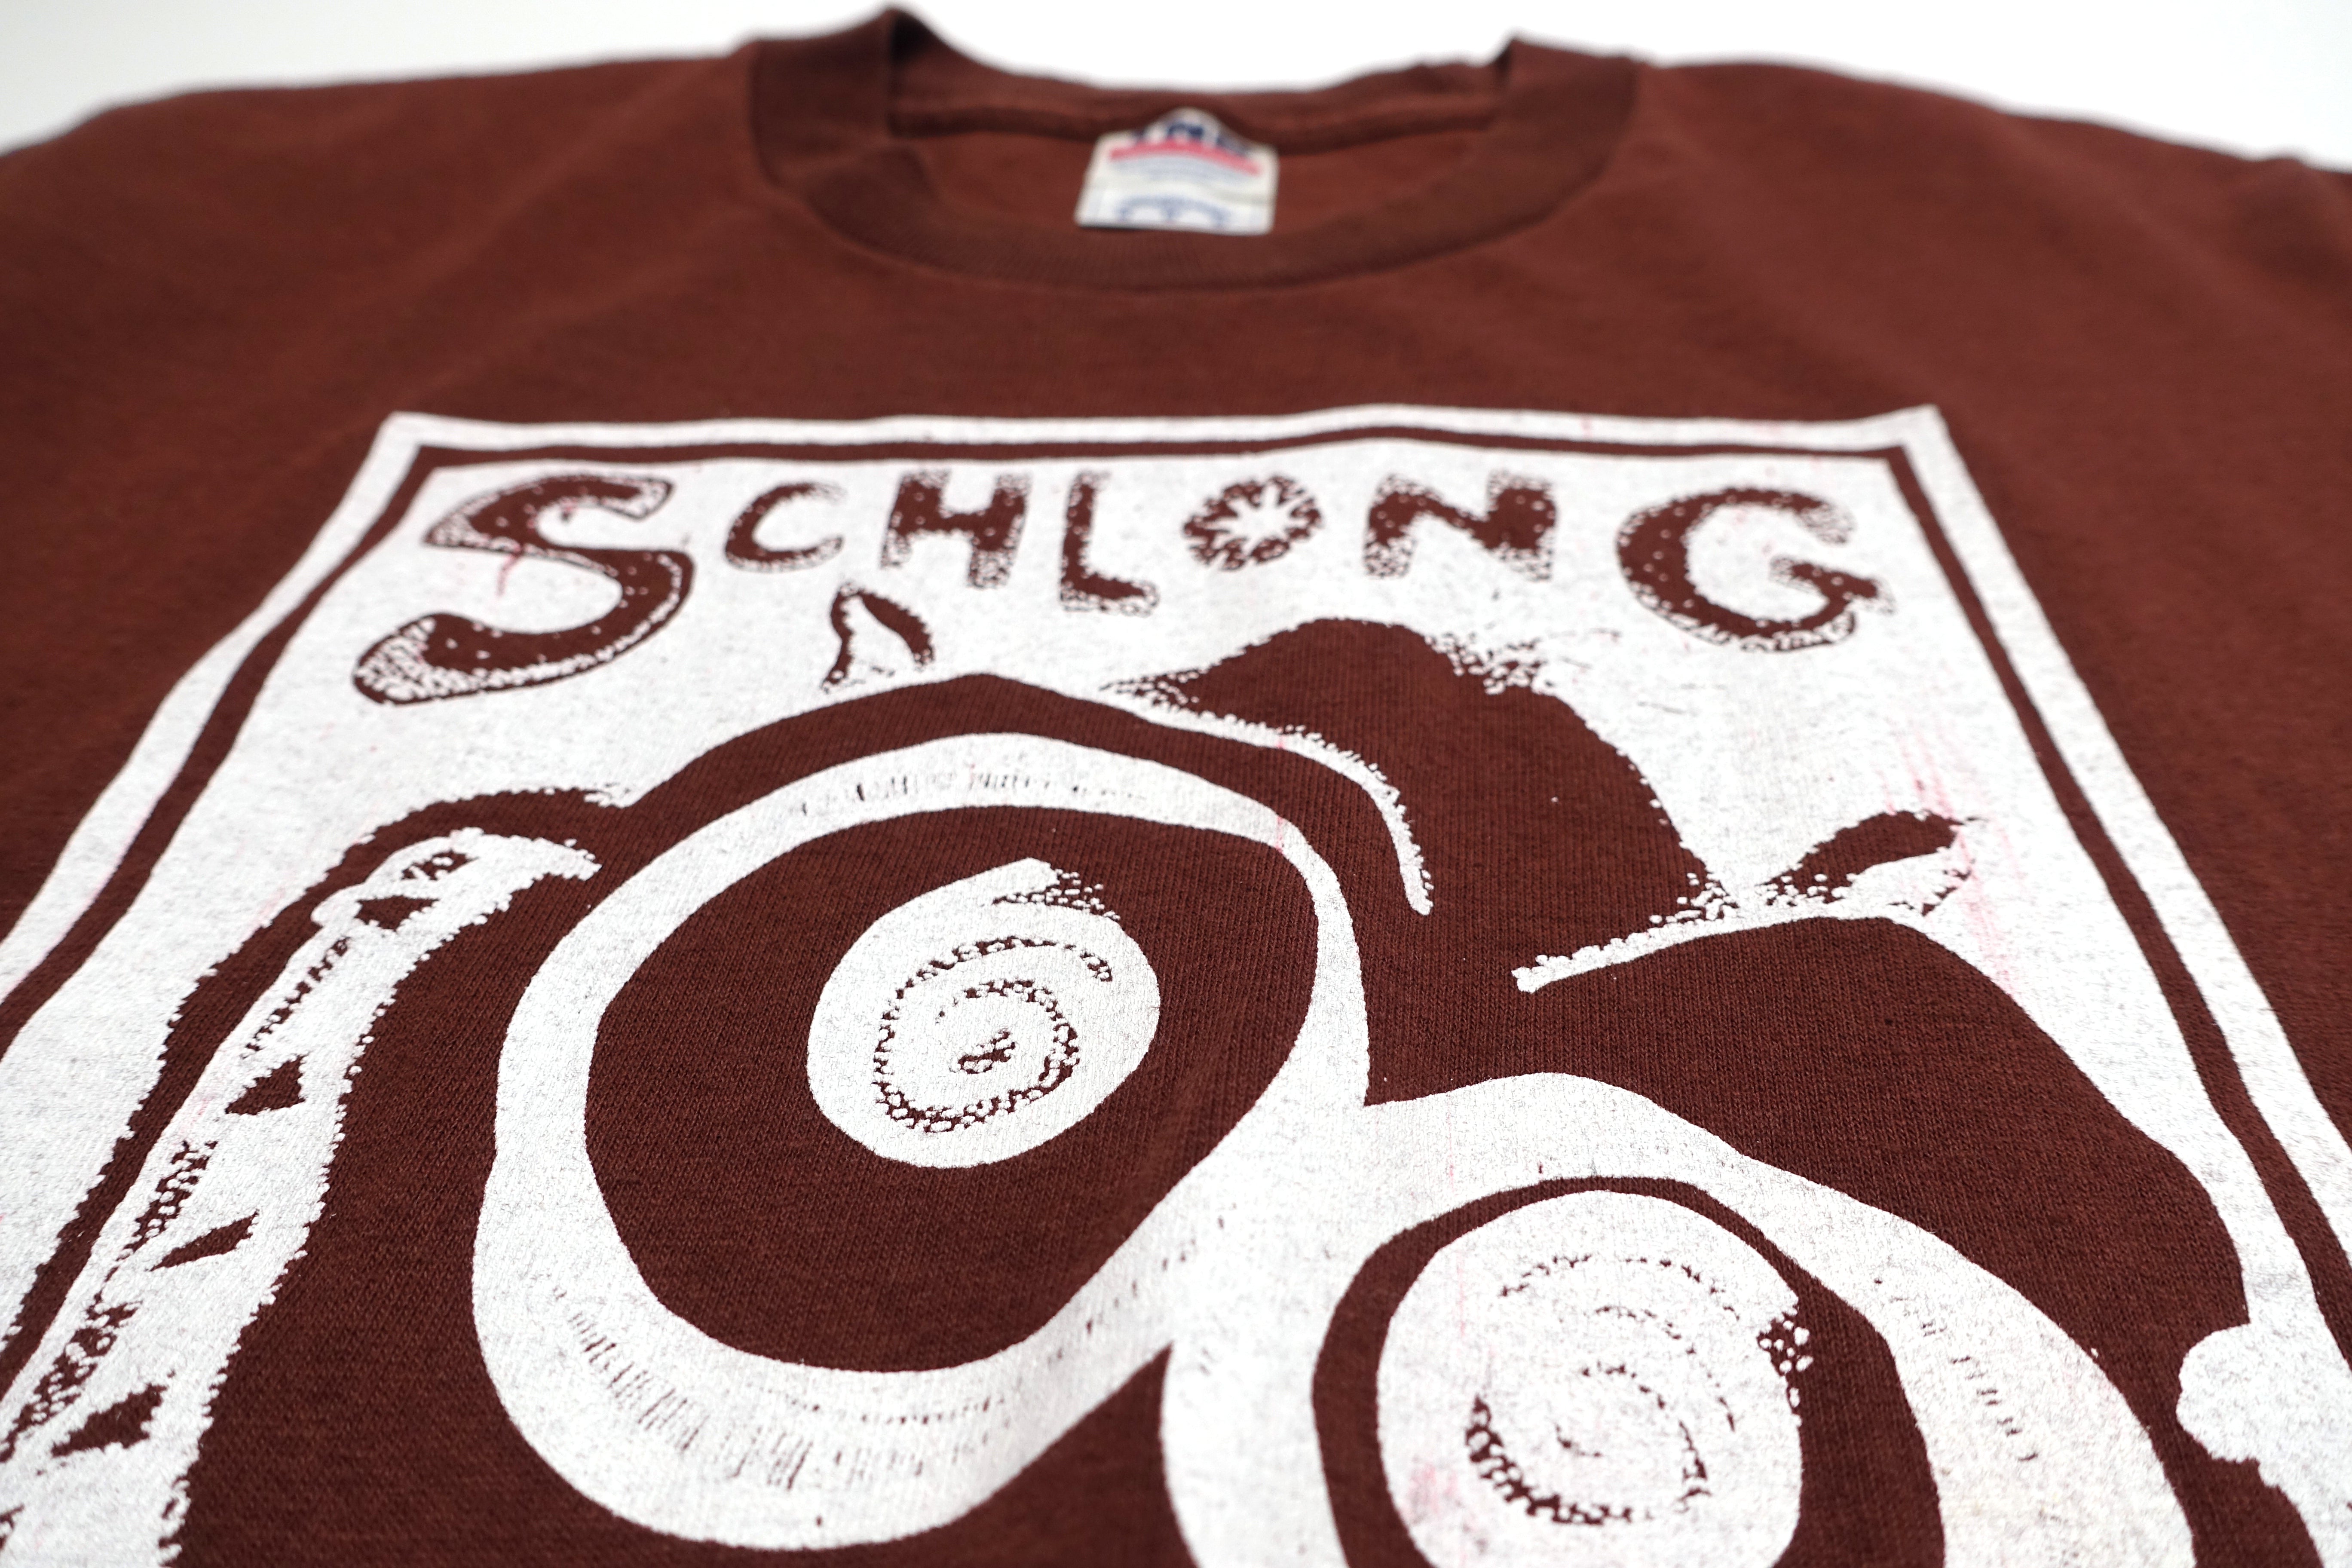 Schlong - Days Of Our Lives 2007 Shirt Size Medium